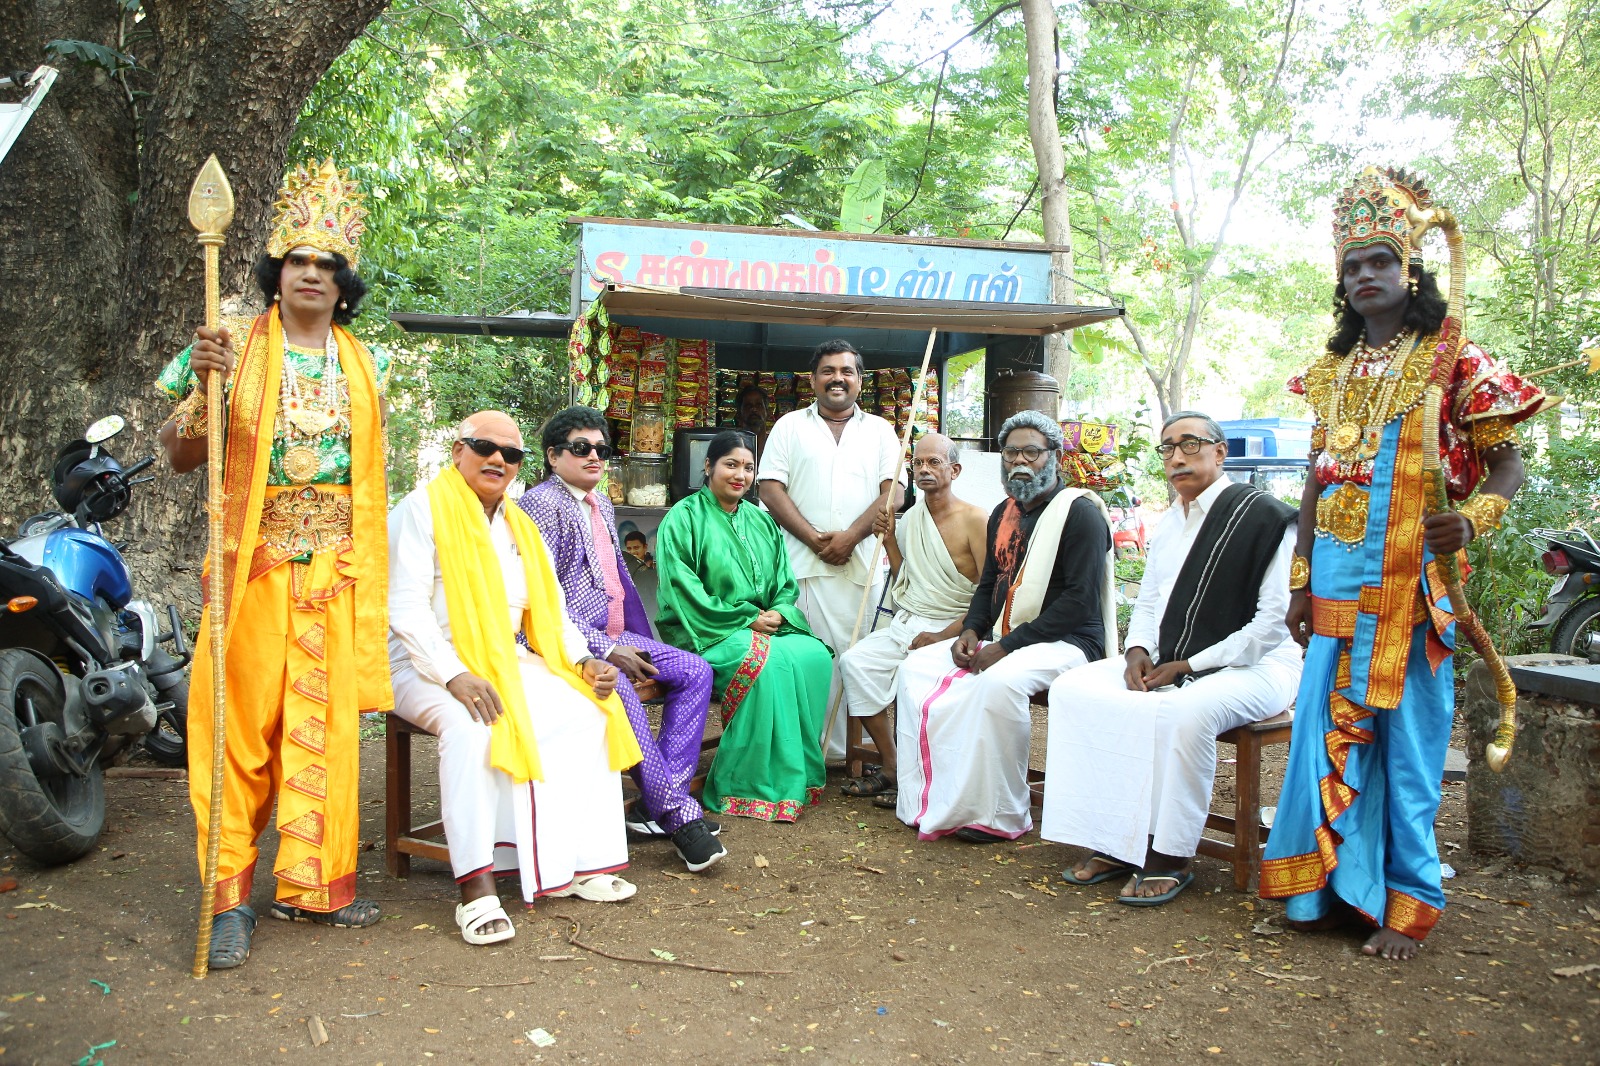 Uruttu Uruttu Song Public Starring Samuthirakani, Kali Venkat